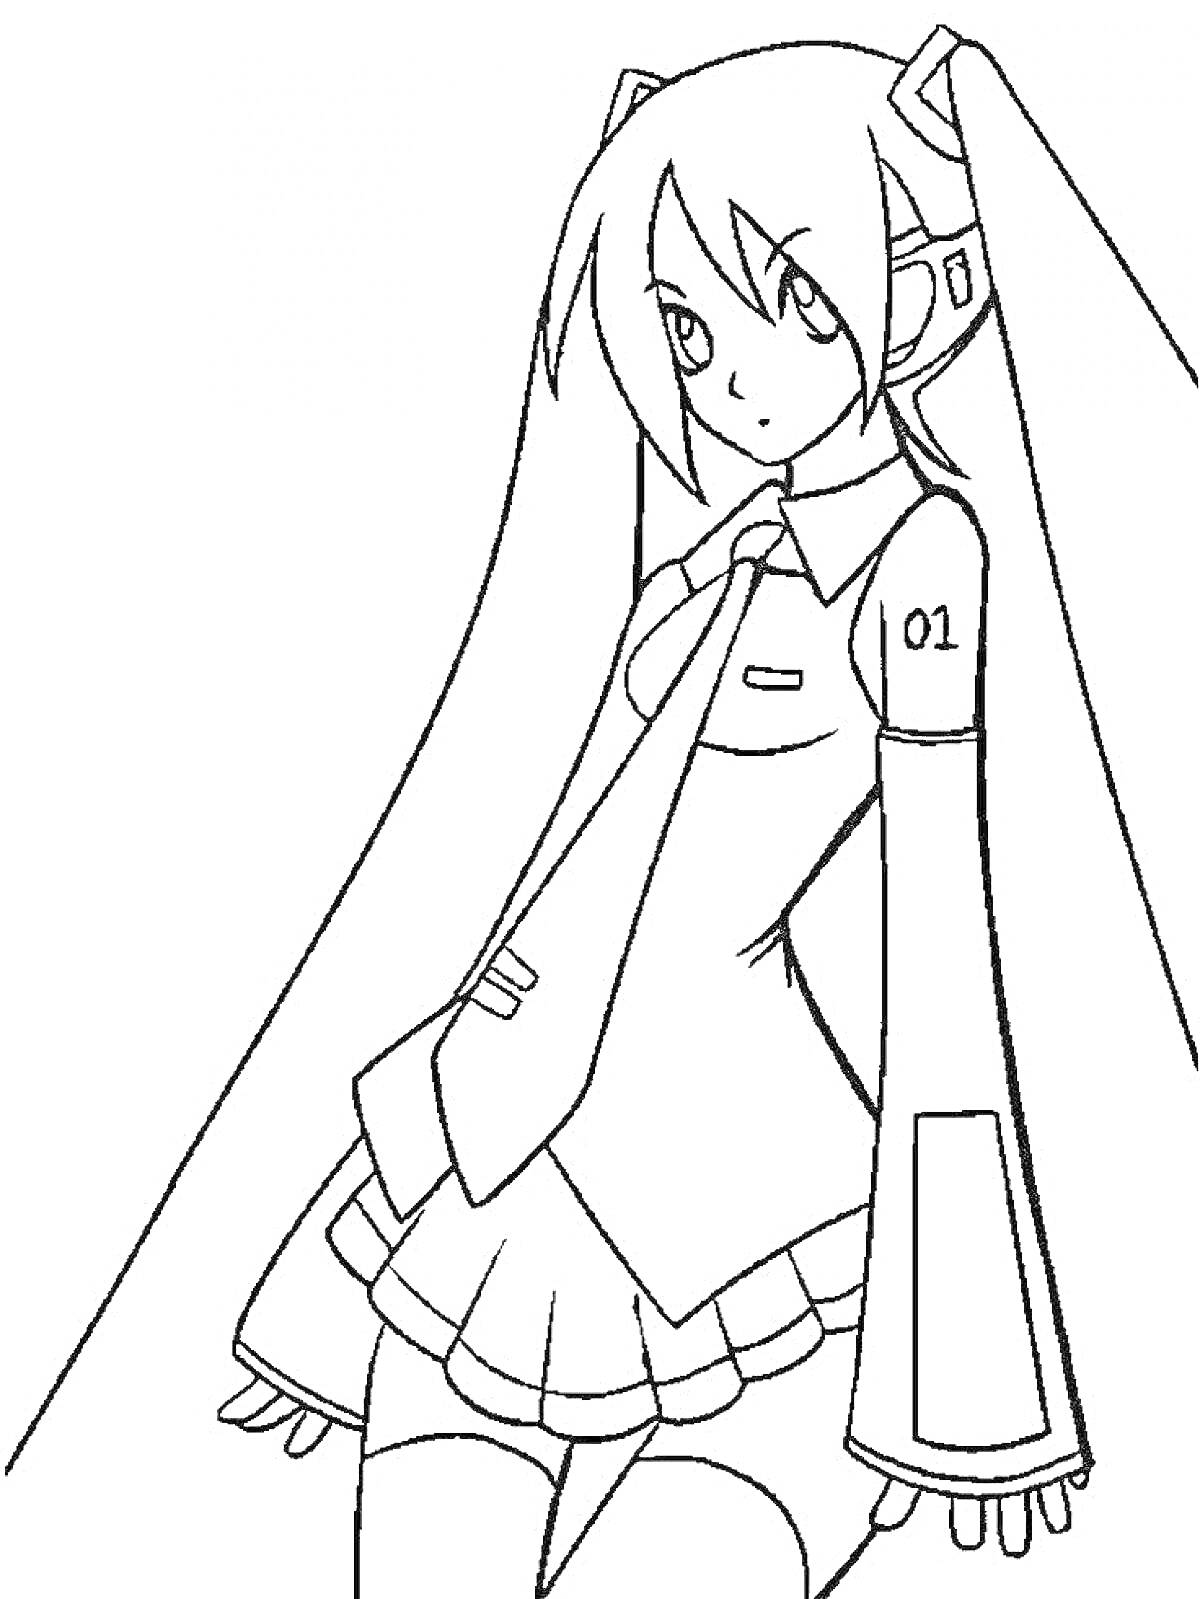 Раскраска аниме девочка с длинными волосами, цифра 01 на плече, воротник с галстуком, юбка и длинные рукава